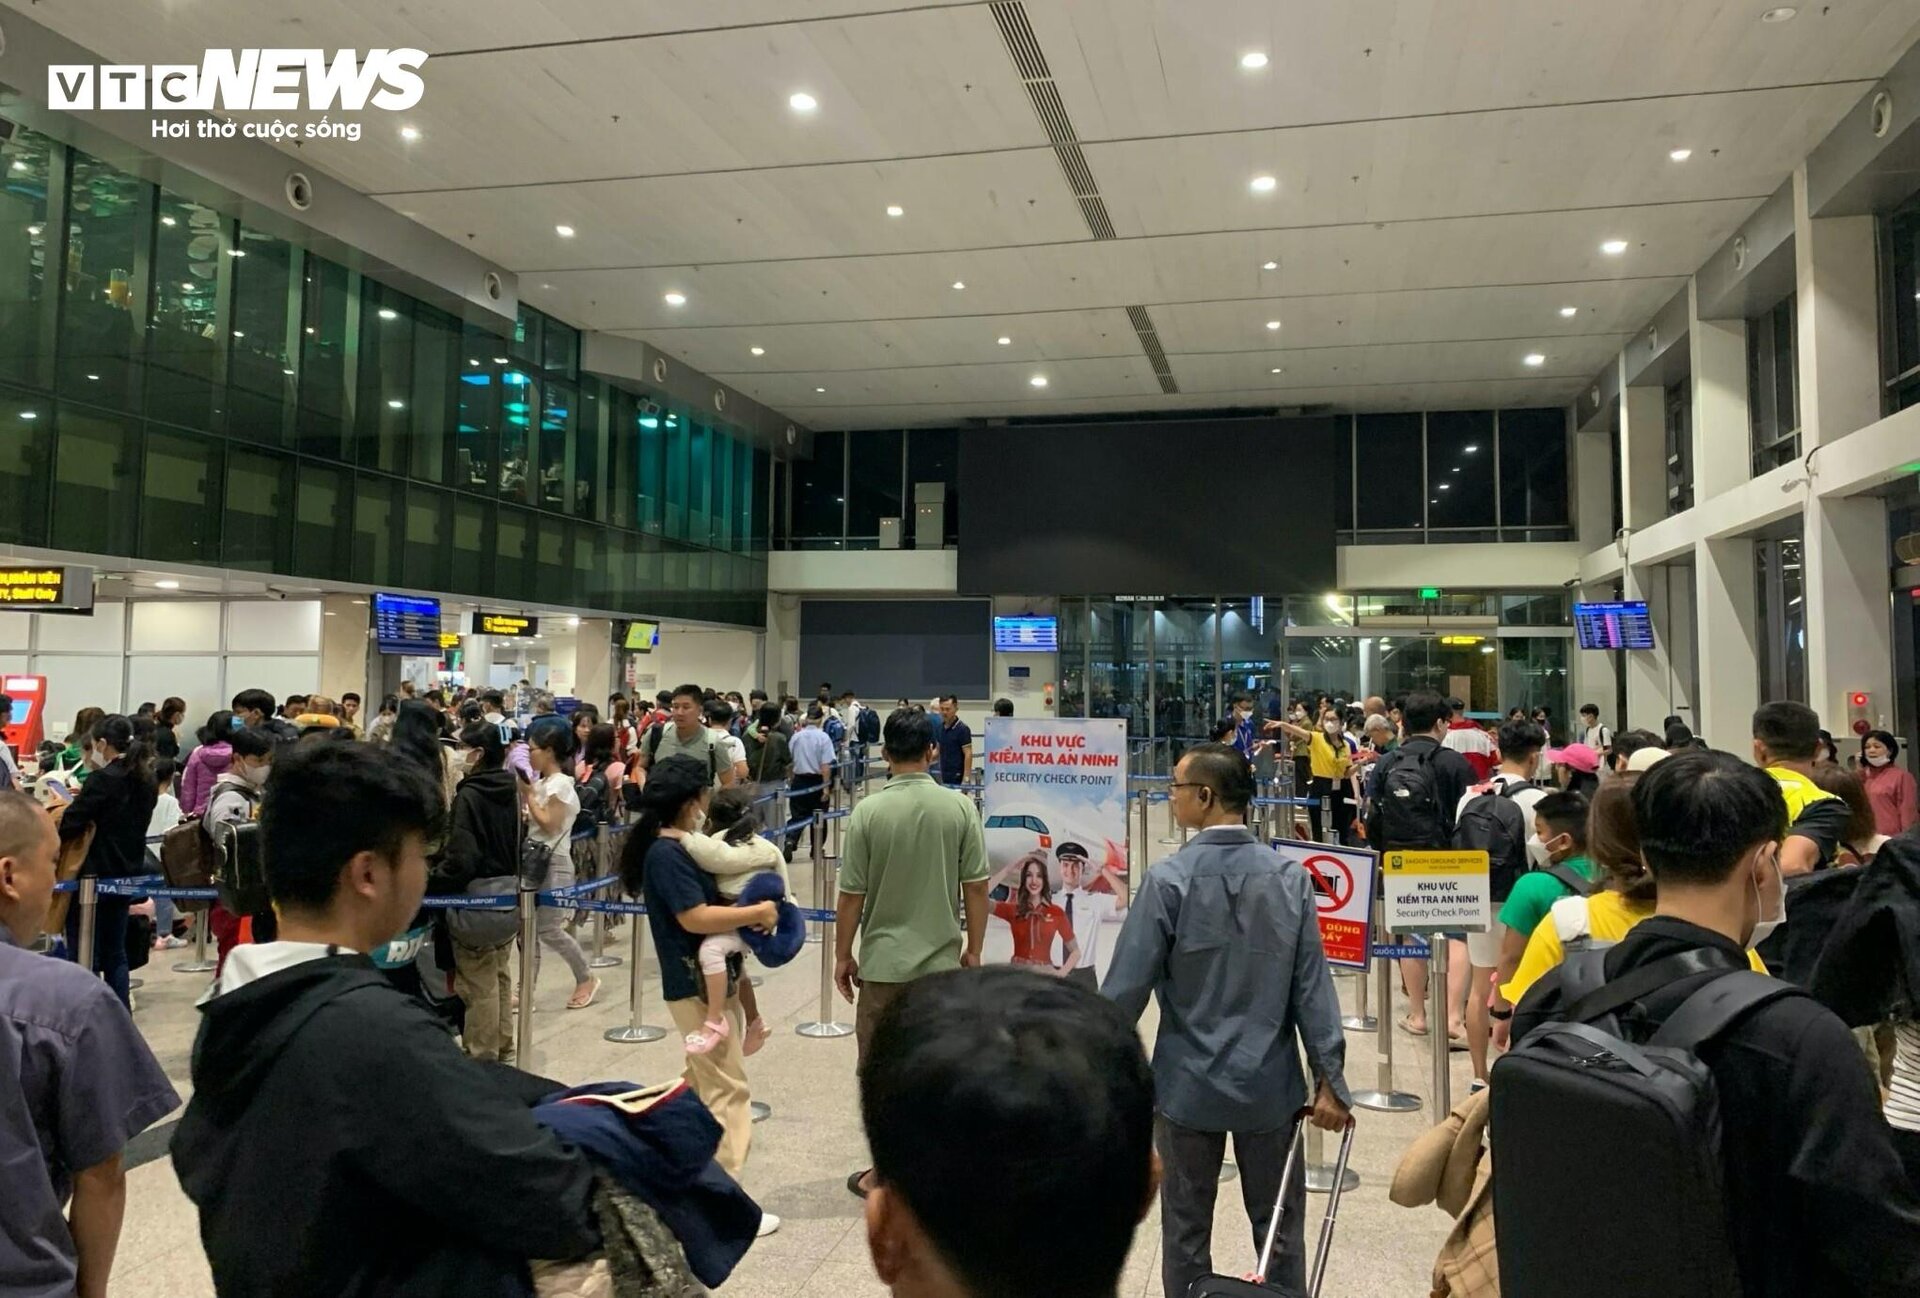 Sân bay Tân Sơn Nhất chật kín người, hành khách mệt mỏi vì chờ đợi - 9